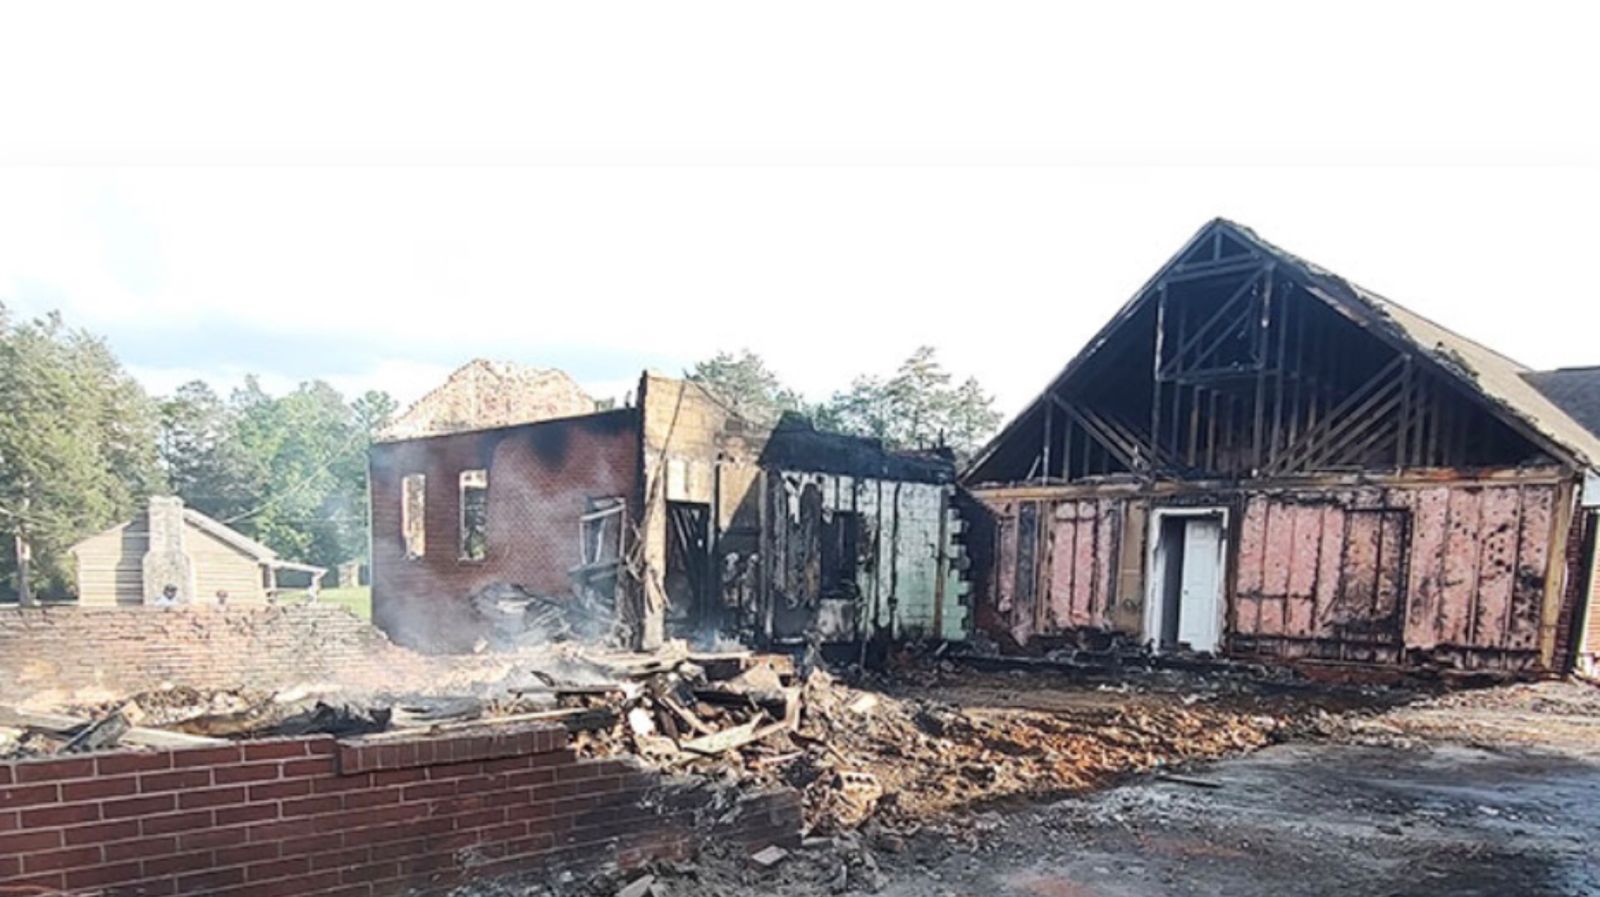 Pastor encoraja cristãos após igreja ser destruída por incêndio: “Deus está ao nosso lado”